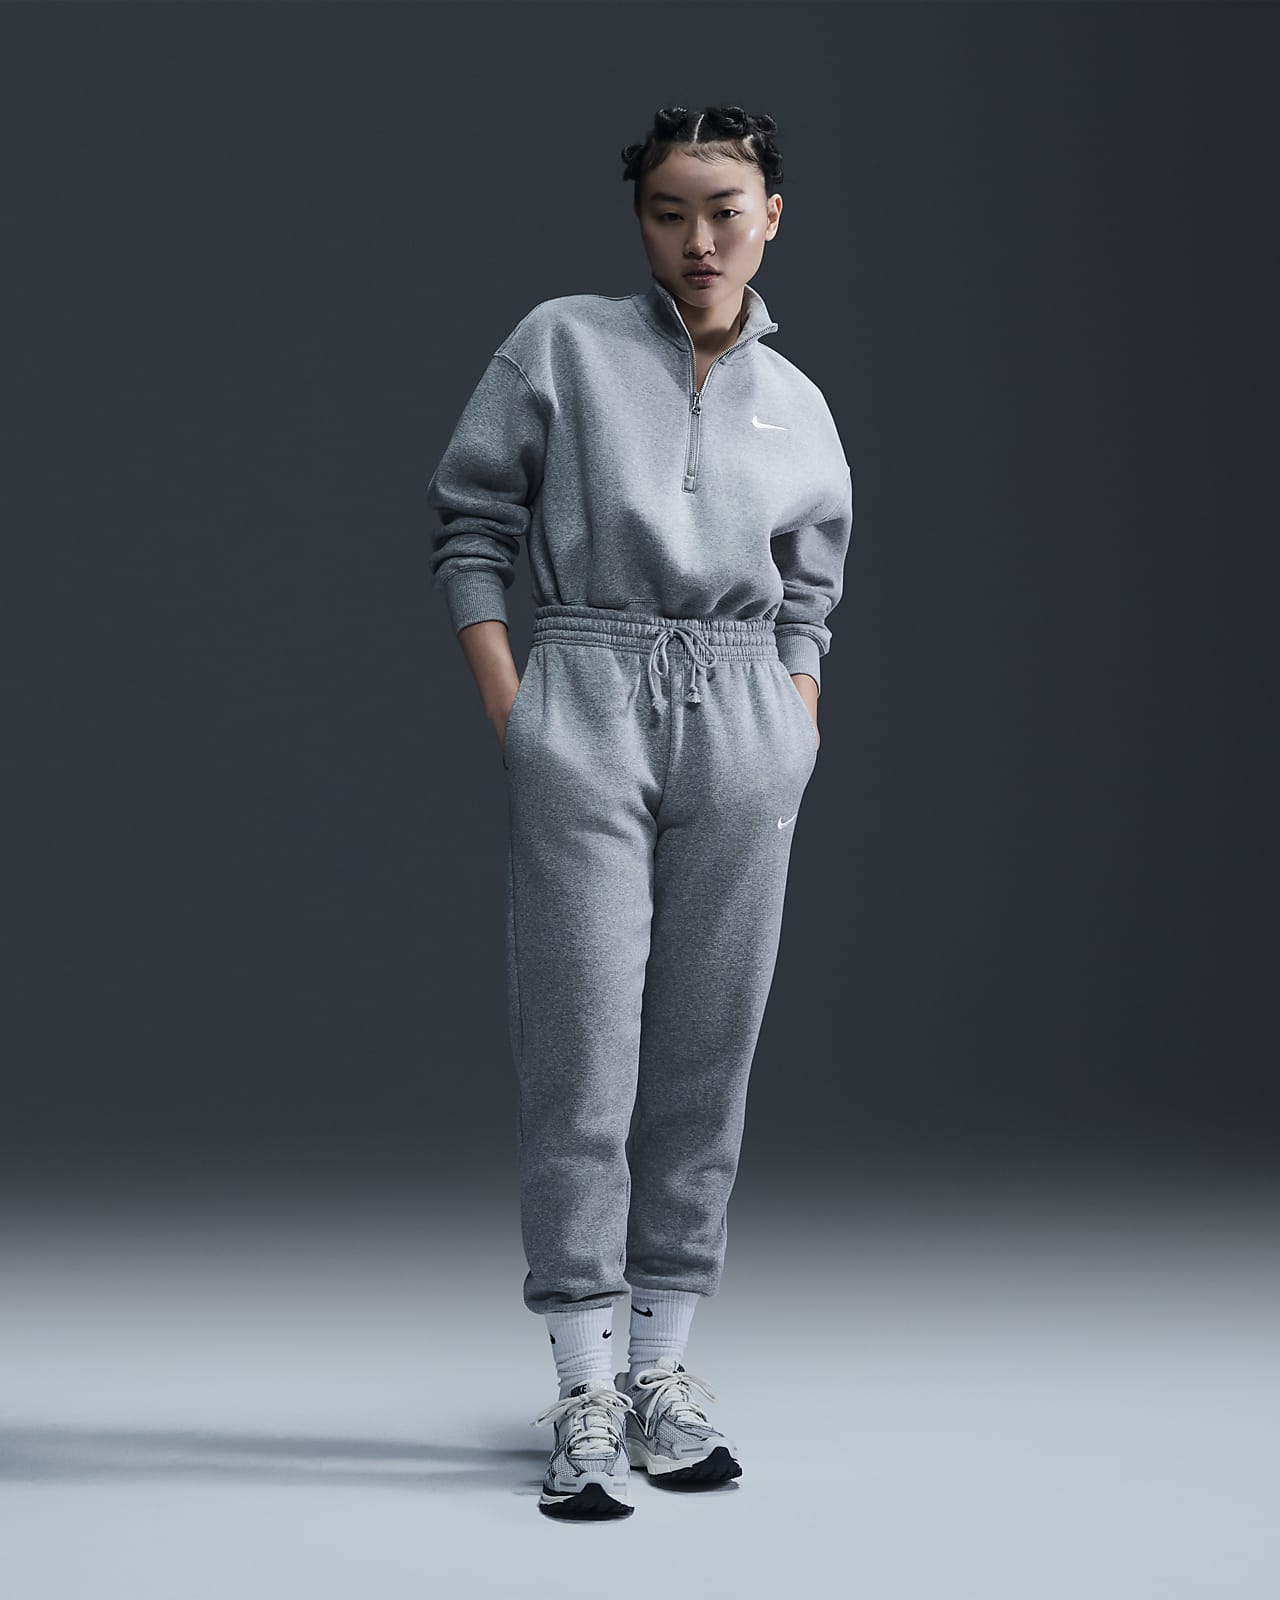 Nike Sportswear Phoenix Fleece Women's Mid-Rise Tracksuit Bottoms